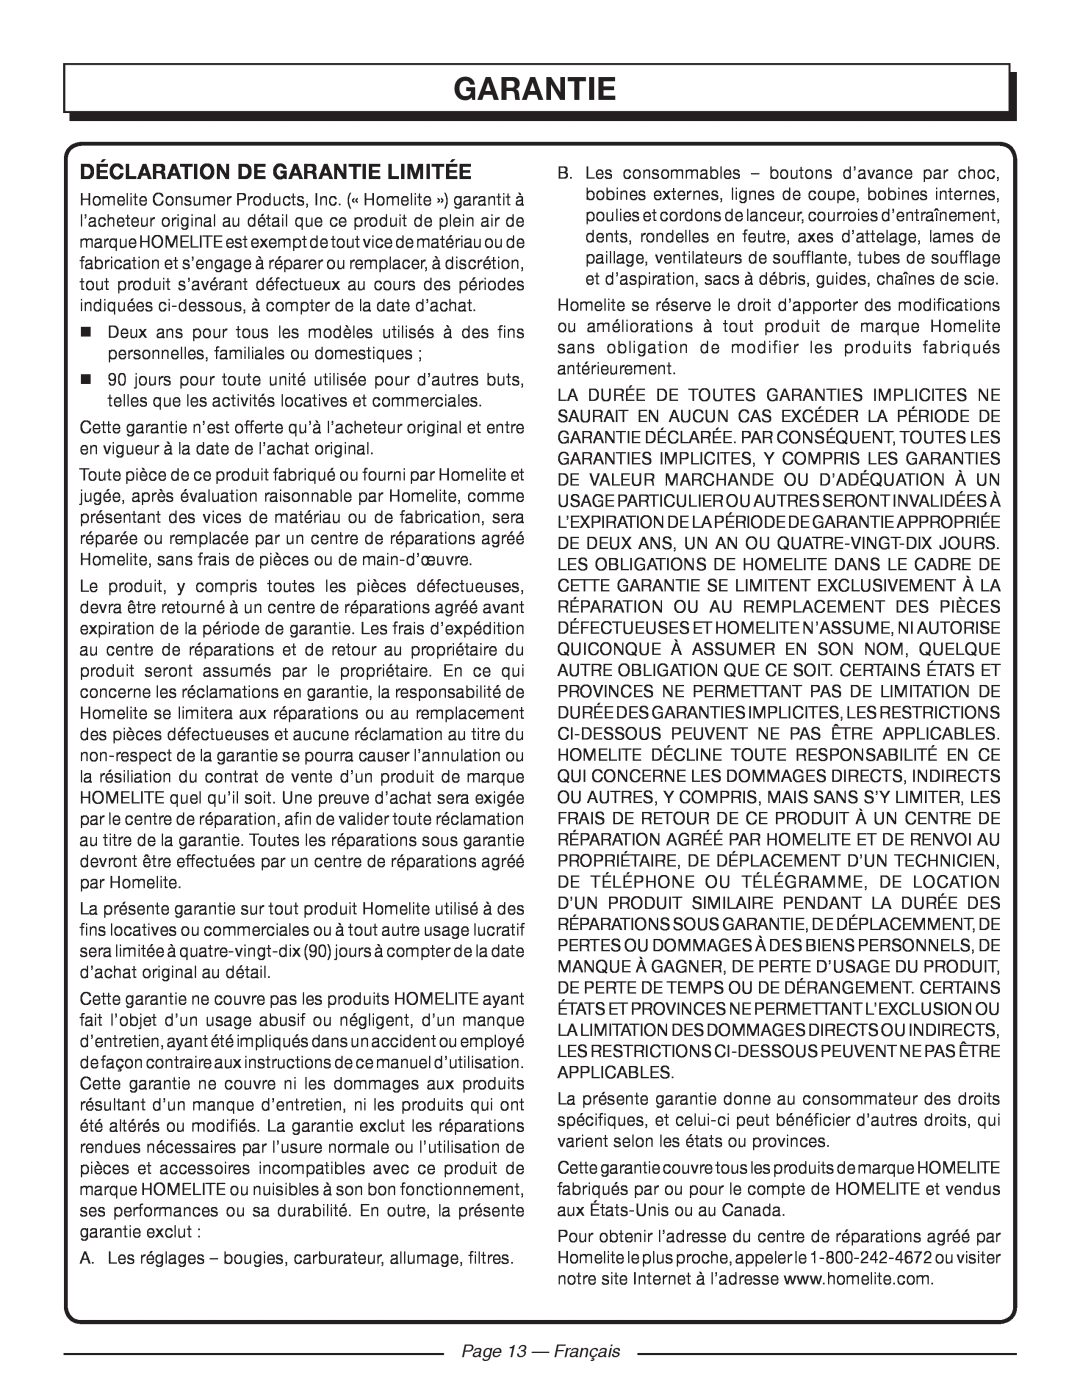 Homelite UT41120 manuel dutilisation Déclaration De Garantie Limitée, Page 13 — Français 